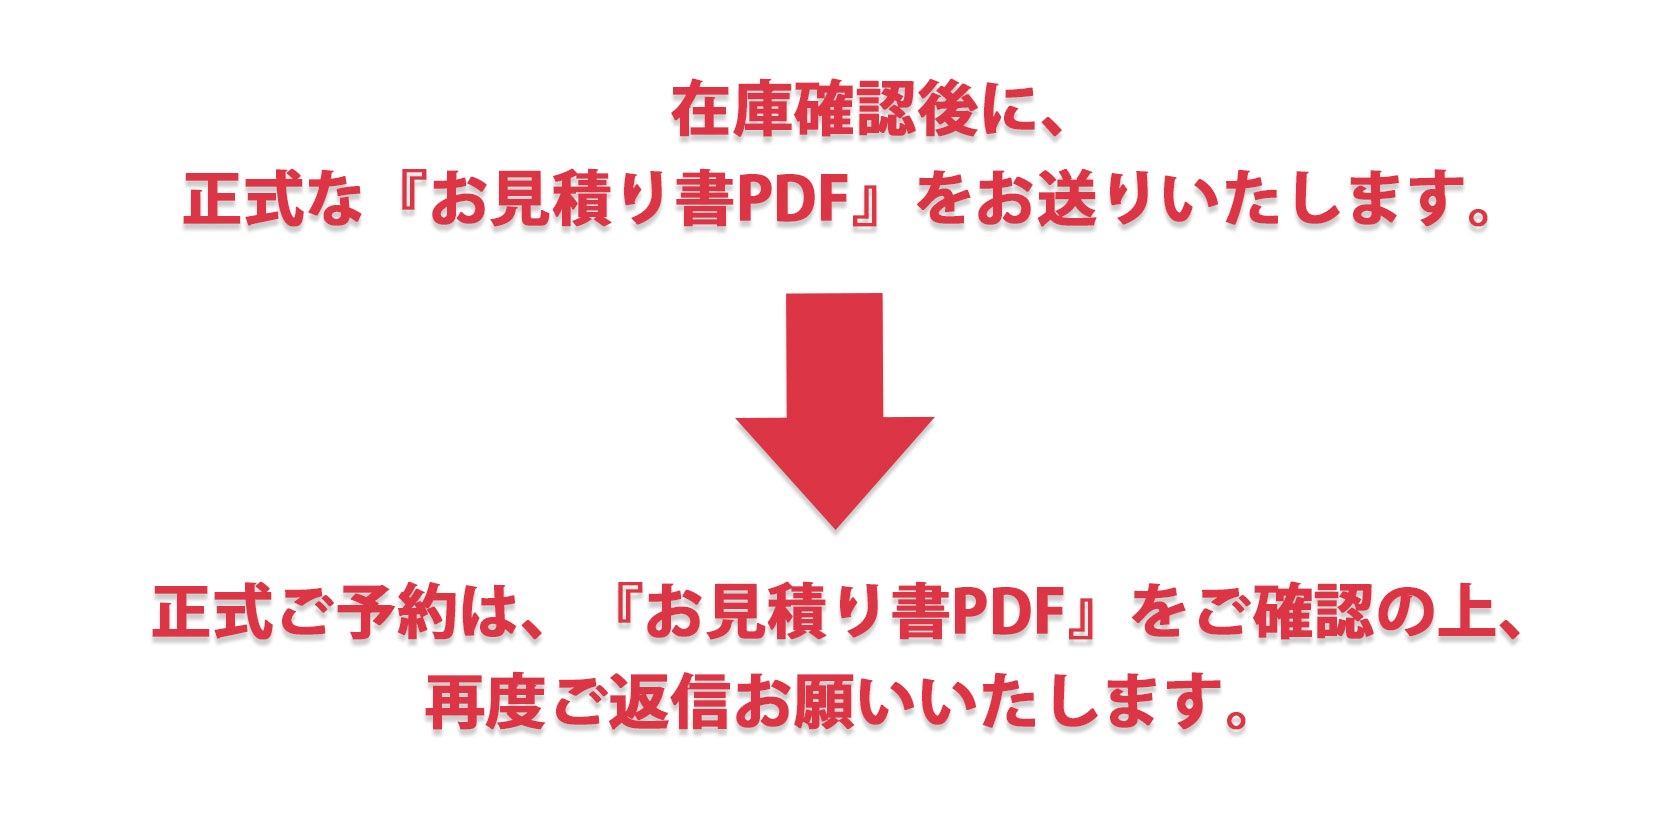 お見積りの内容確認後に、担当より正式な『お見積り書PDF』をお送りいたします。正式ご予約は、『お見積り書PDF』をご確認の上、再度ご返信お願いいたします。